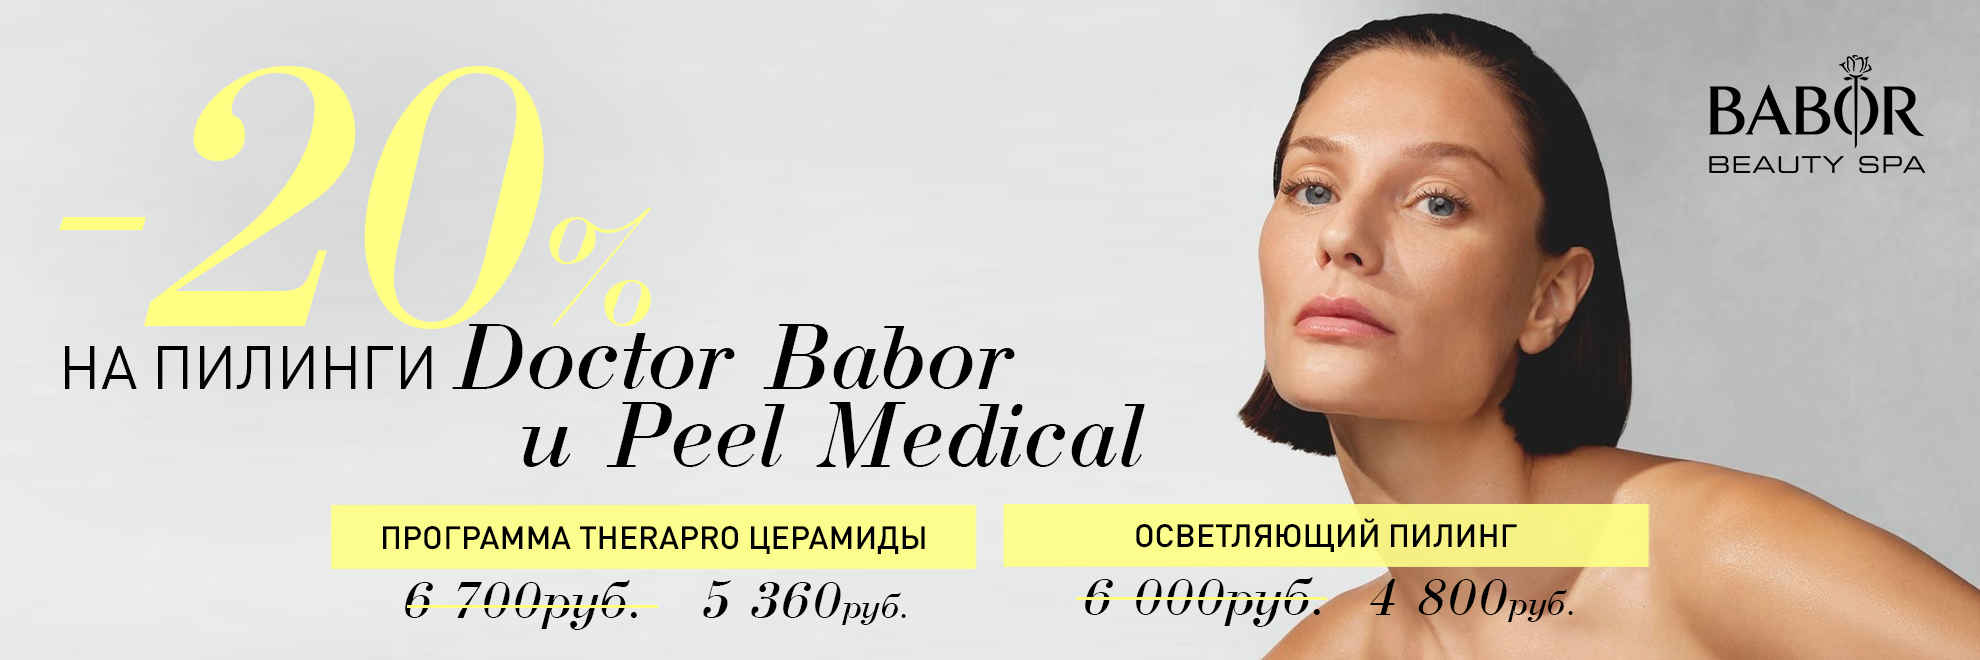 СКИДКА 20% на пилинги Doctor Babor и Peel Medical